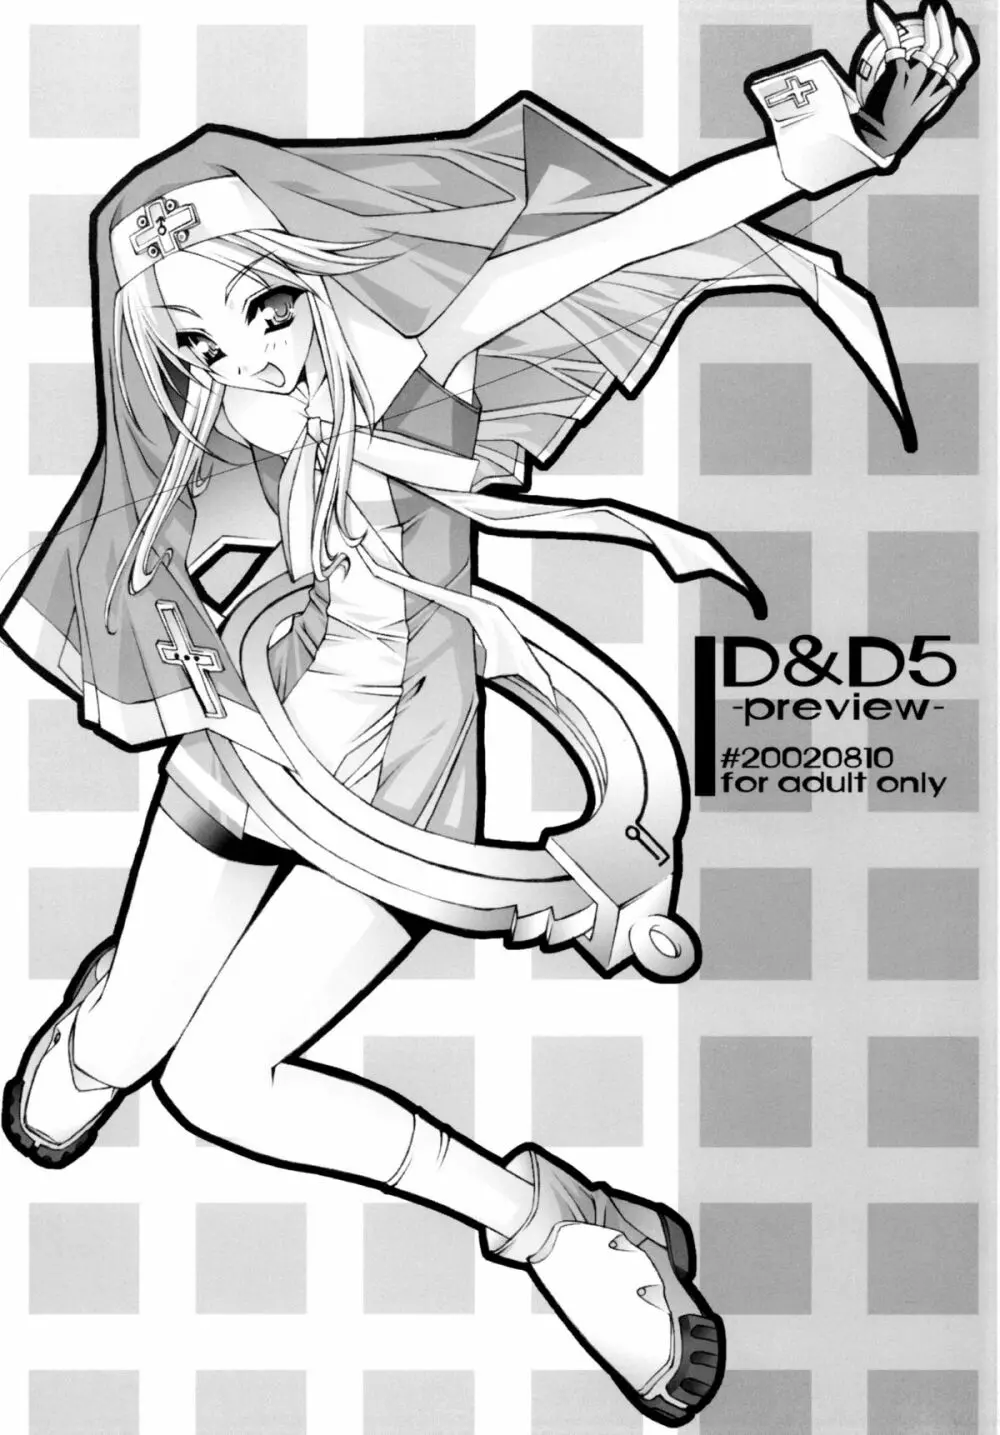 D&D 05 -preview- - page1